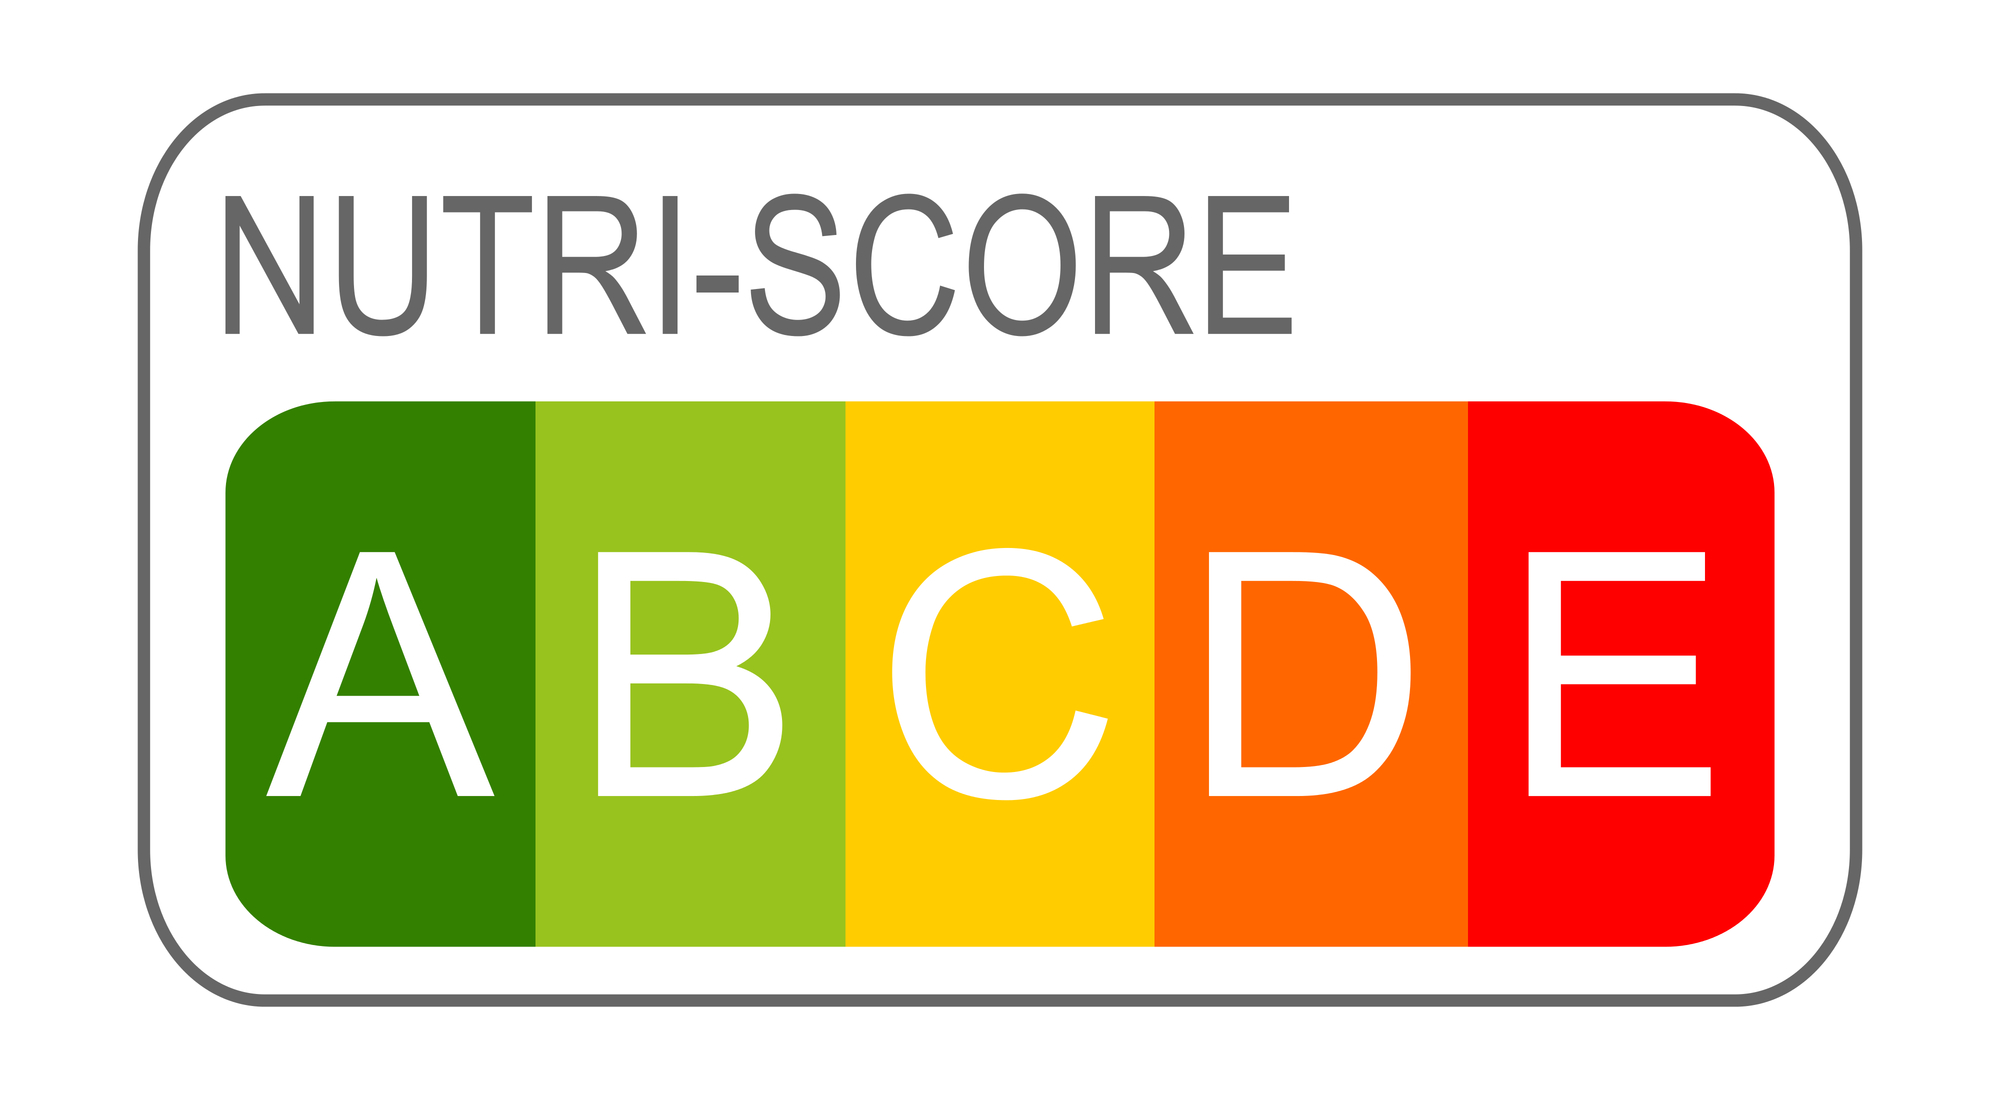 ¿Qué es el semáforo nutricional Nutri-Score?